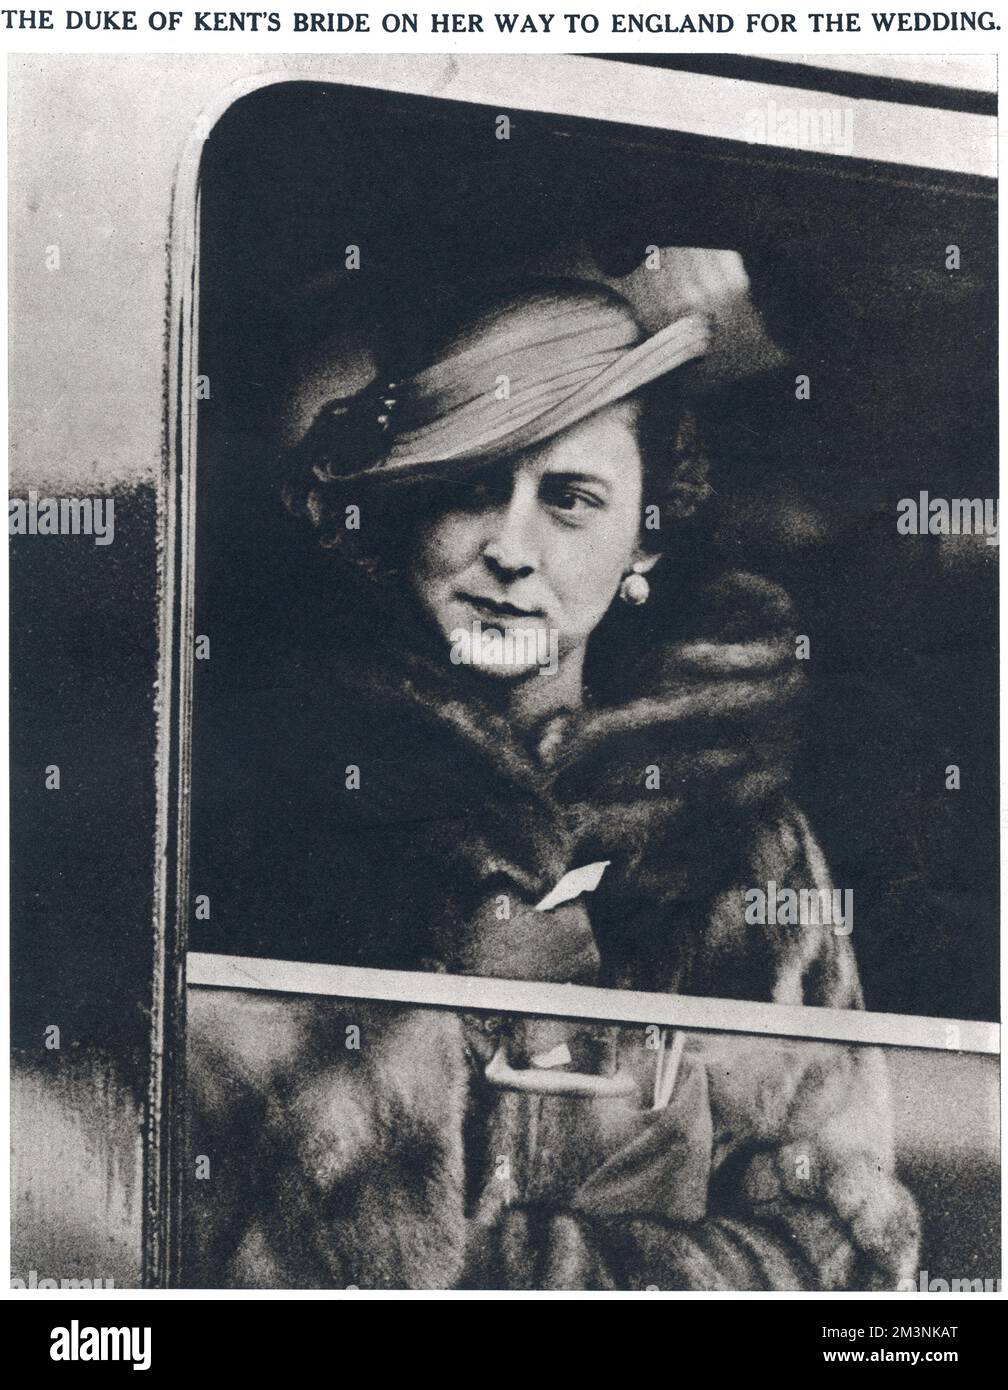 Princesse Marina de Grèce, épouse du prince George, duc de Kent à une fenêtre du train dans lequel elle a voyagé de Paris à Calais en route vers Londres pour son mariage à l'abbaye de Westminster le 29 novembre 1934. Toujours élégante, la future Duchesse porte une robe en crêpe rose beige, un manteau de trois quarts garni de renard, et un chapeau en soie beige cousue avec des plumes d'autruche beige et marron qui coulent sur le bord d'un côté. Comme le montre cette photo, elle a remplacé le manteau léger par un manteau de vison à certaines étapes de son voyage! Date: 1934 Banque D'Images